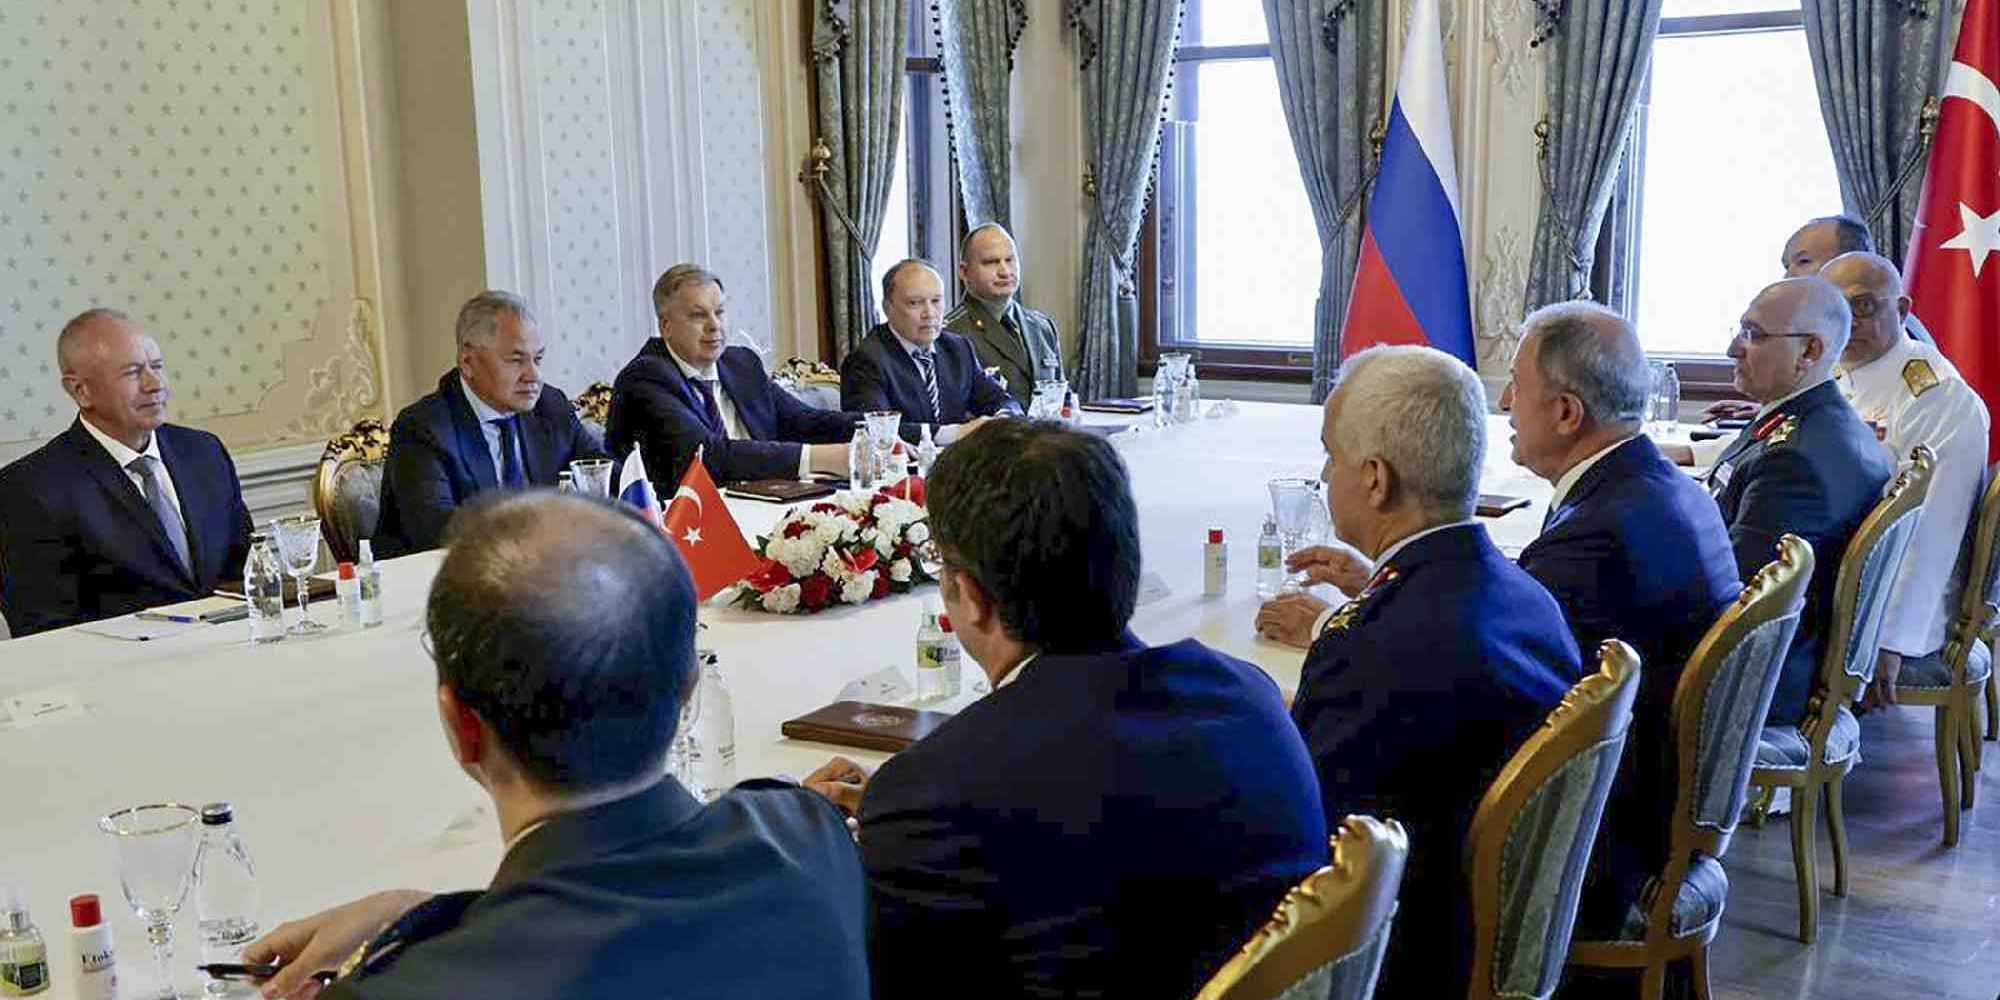 O Ρώσος υπουργός Άμυνας Σεργκέι Σοϊγκού και ο υπουργό Άμυνας της Τουρκίας Χουλουσί Ακάρ πριν από την τελετή υπογραφής της συμφωνίας για την εξαγωγή σιτηρών